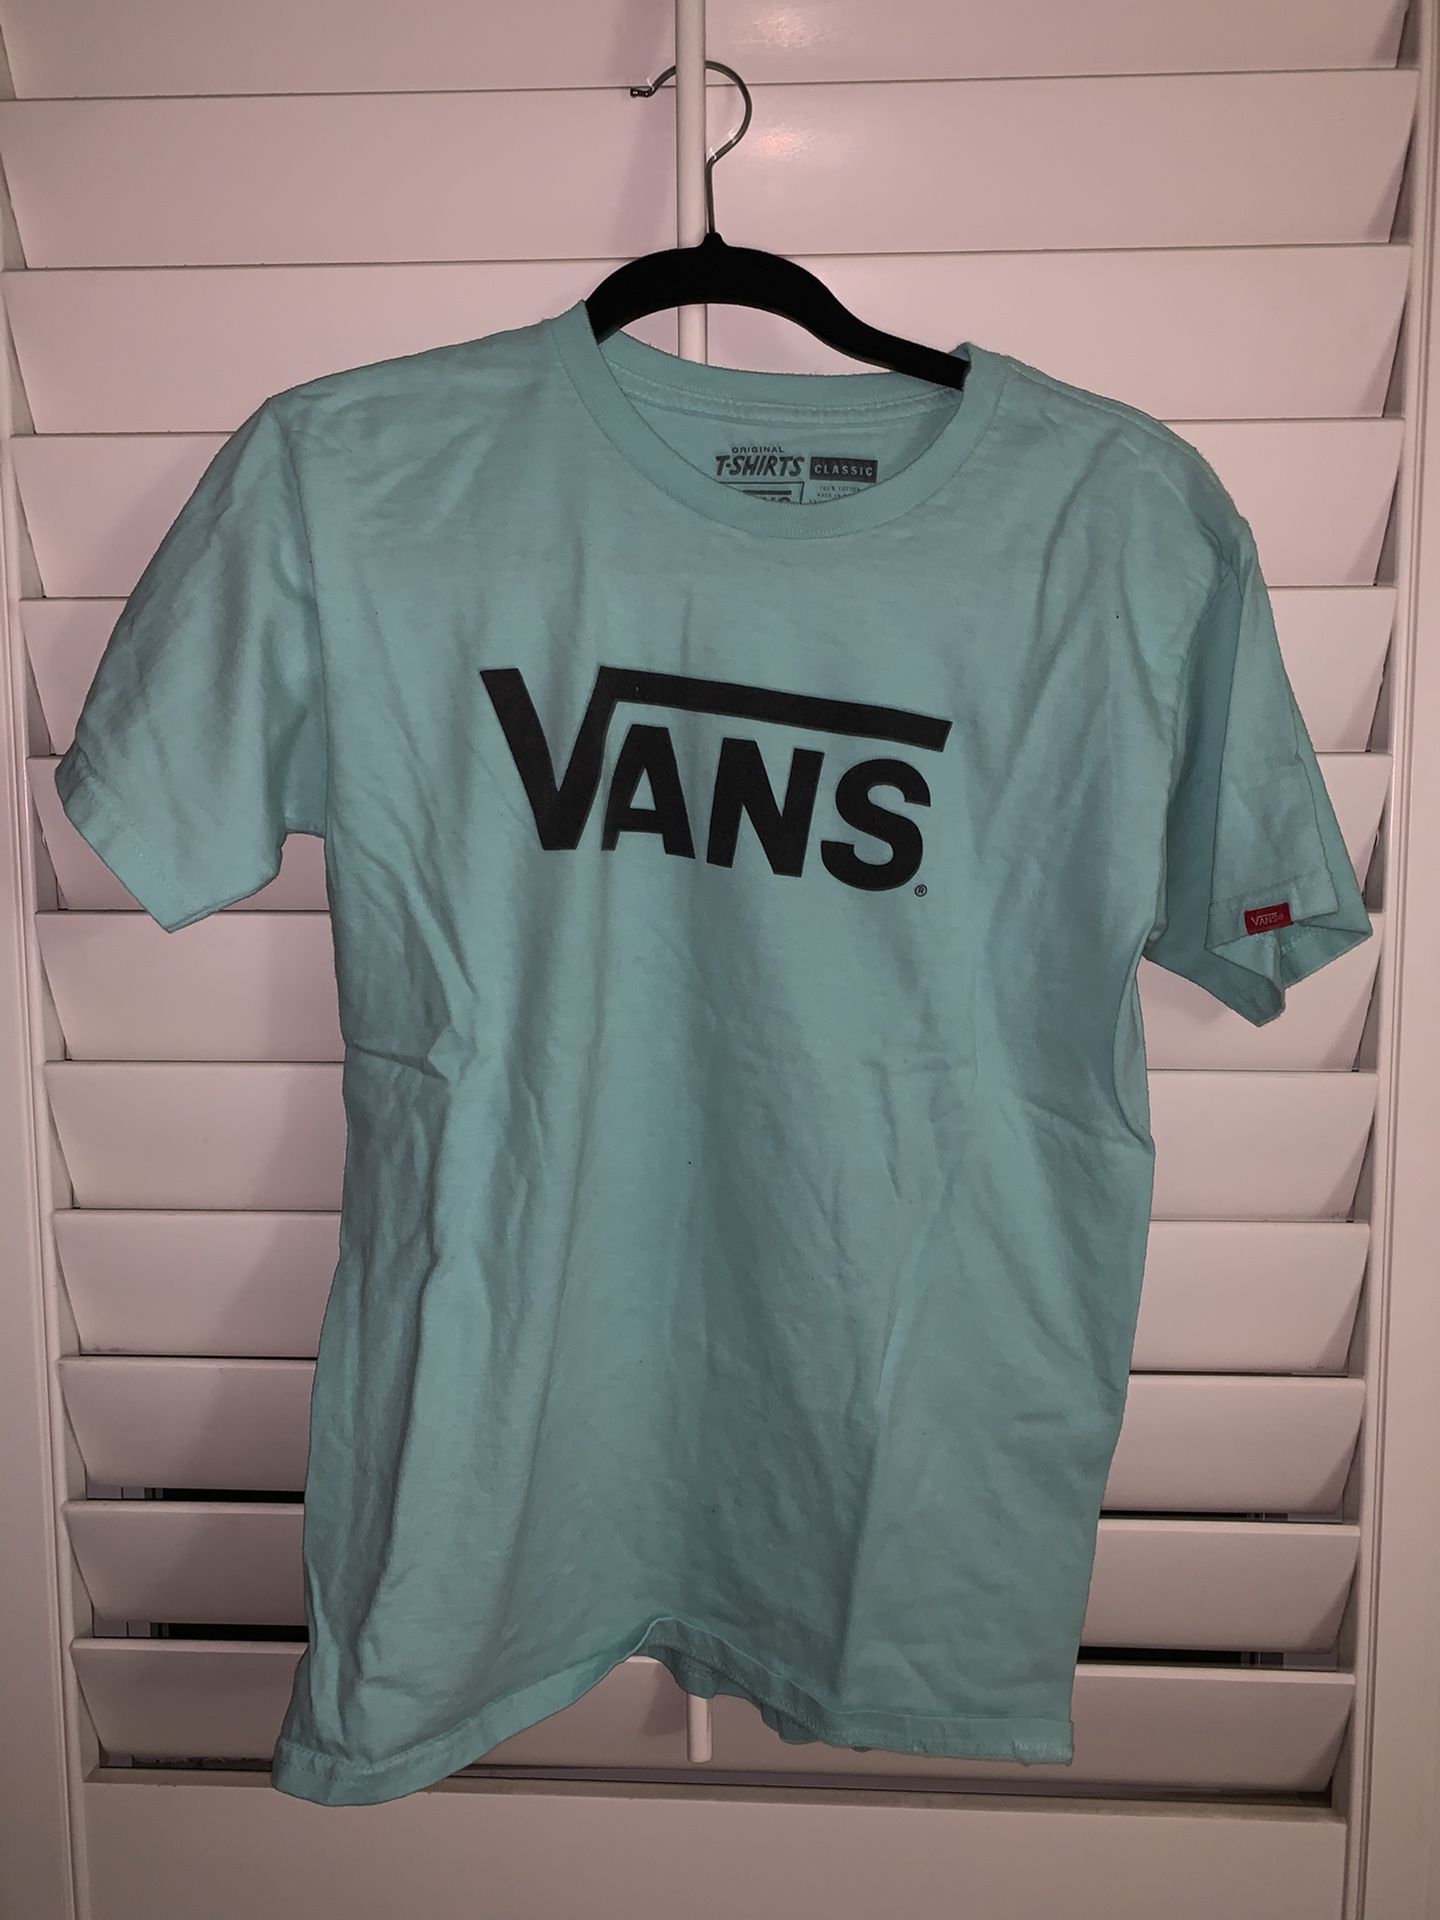 Vans Classic T-Shirt size S